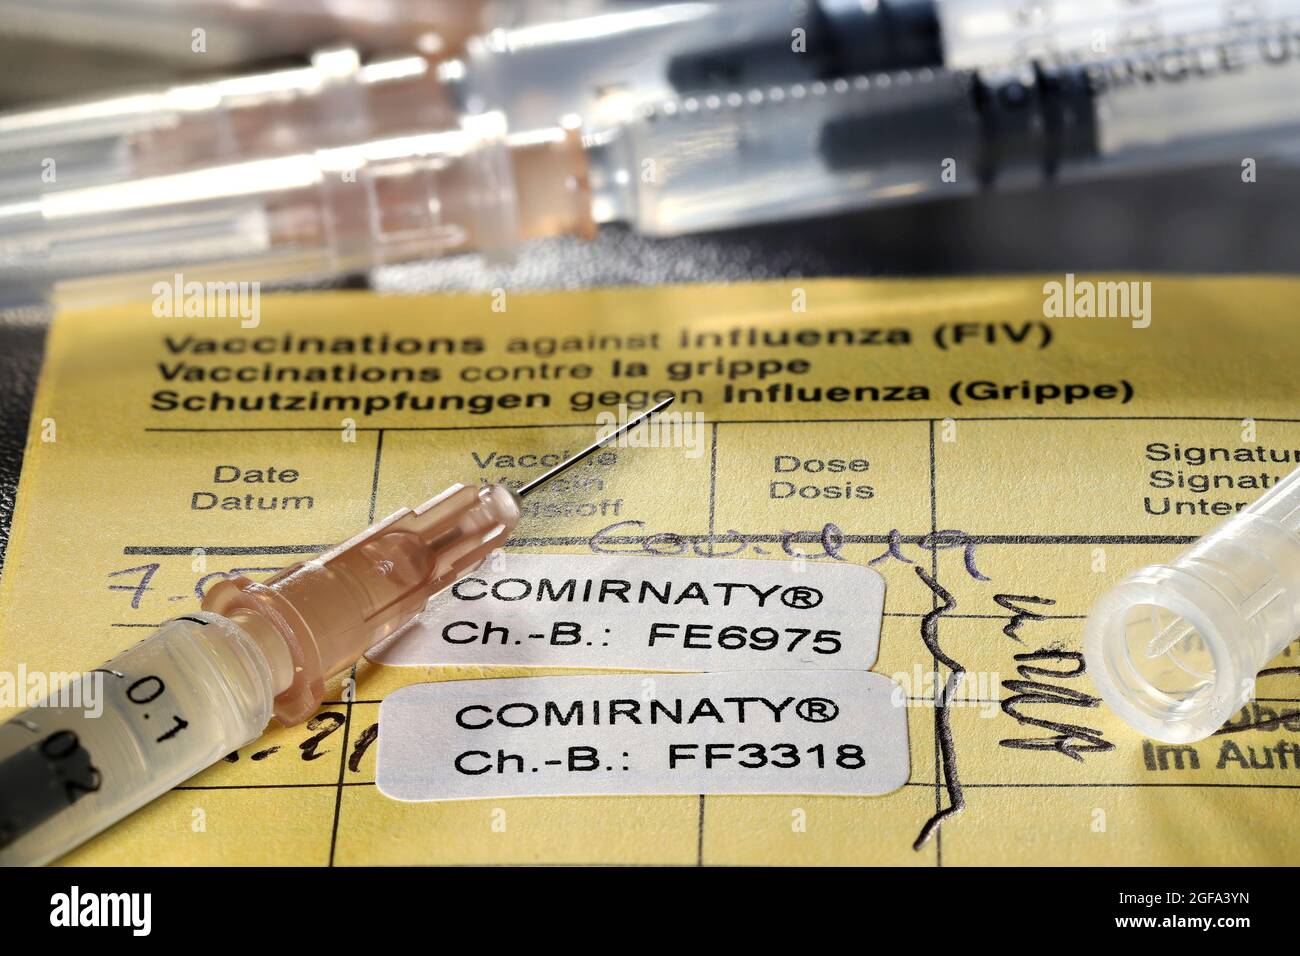 Documentation de la première et de la deuxième vaccination avec le vaccin BioNTech/Pfizer COVID-19 Comirnaty dans un certificat de vaccination international. Banque D'Images